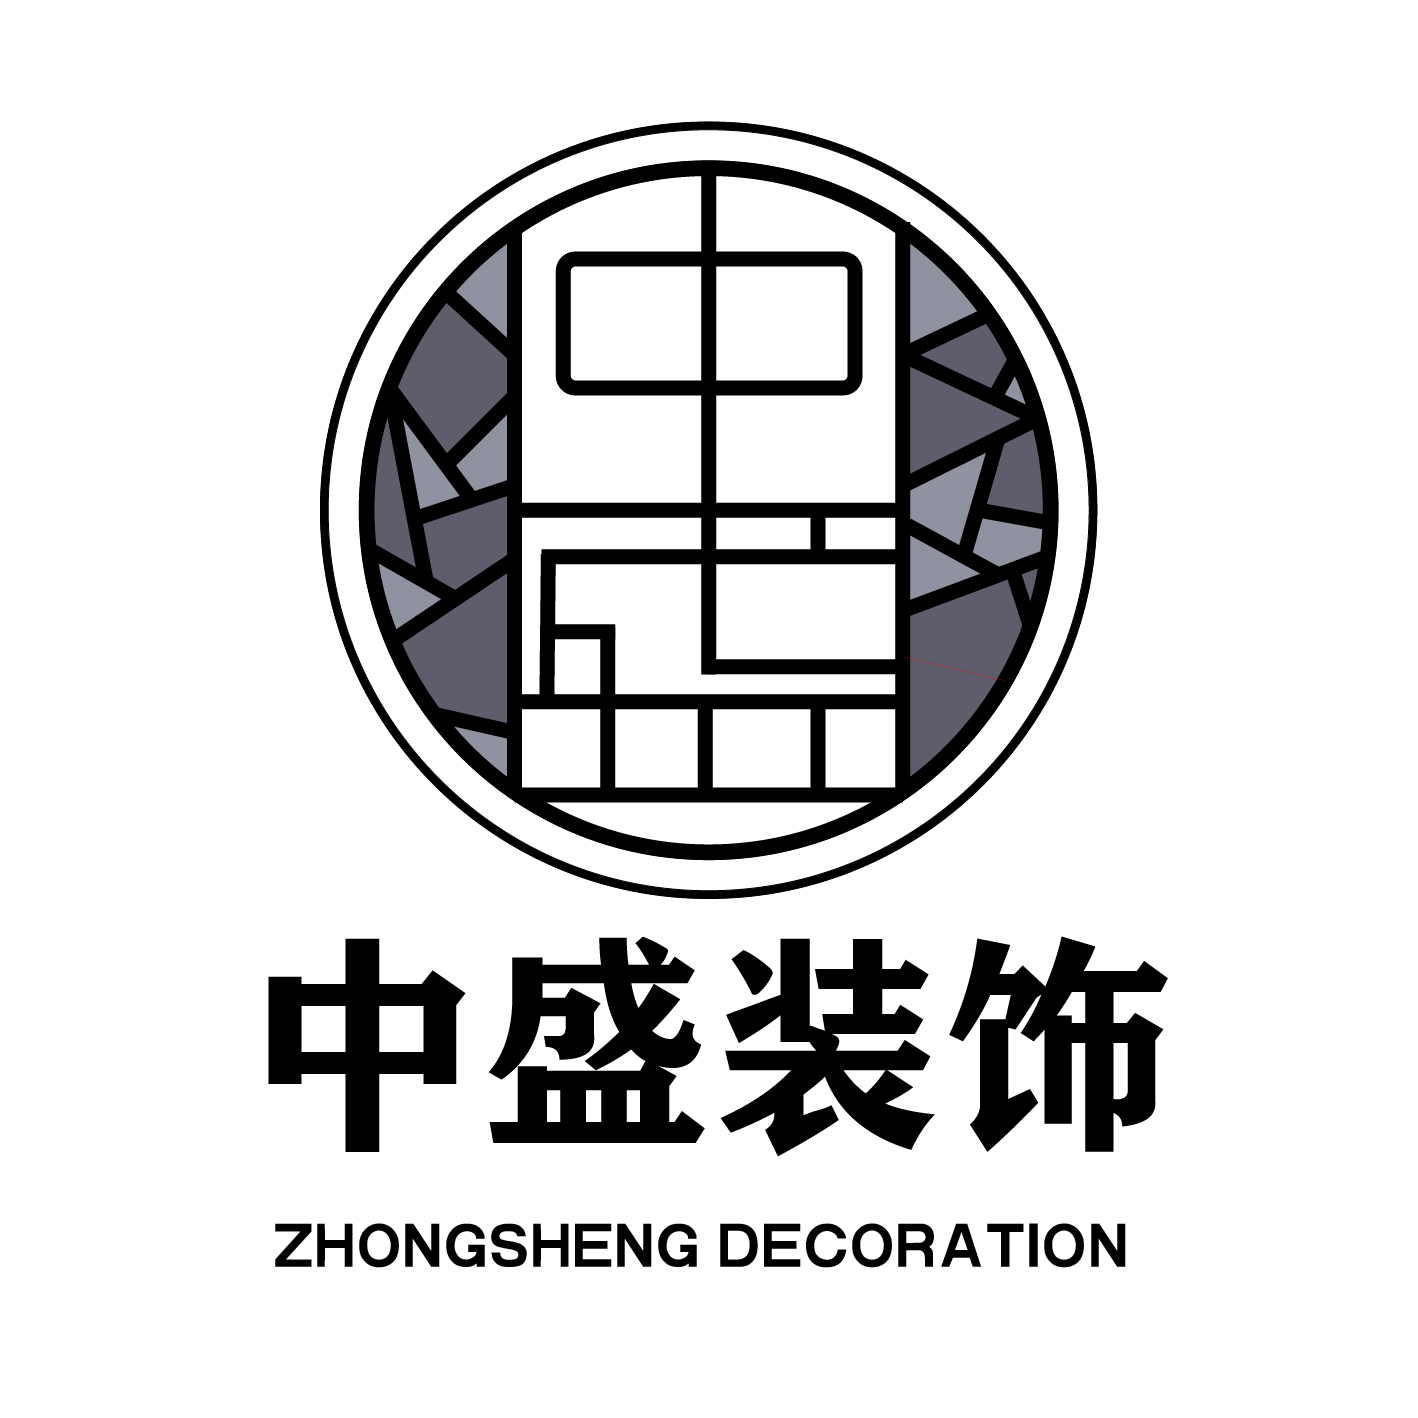 黑龙江省中盛建筑工程有限公司今日开业